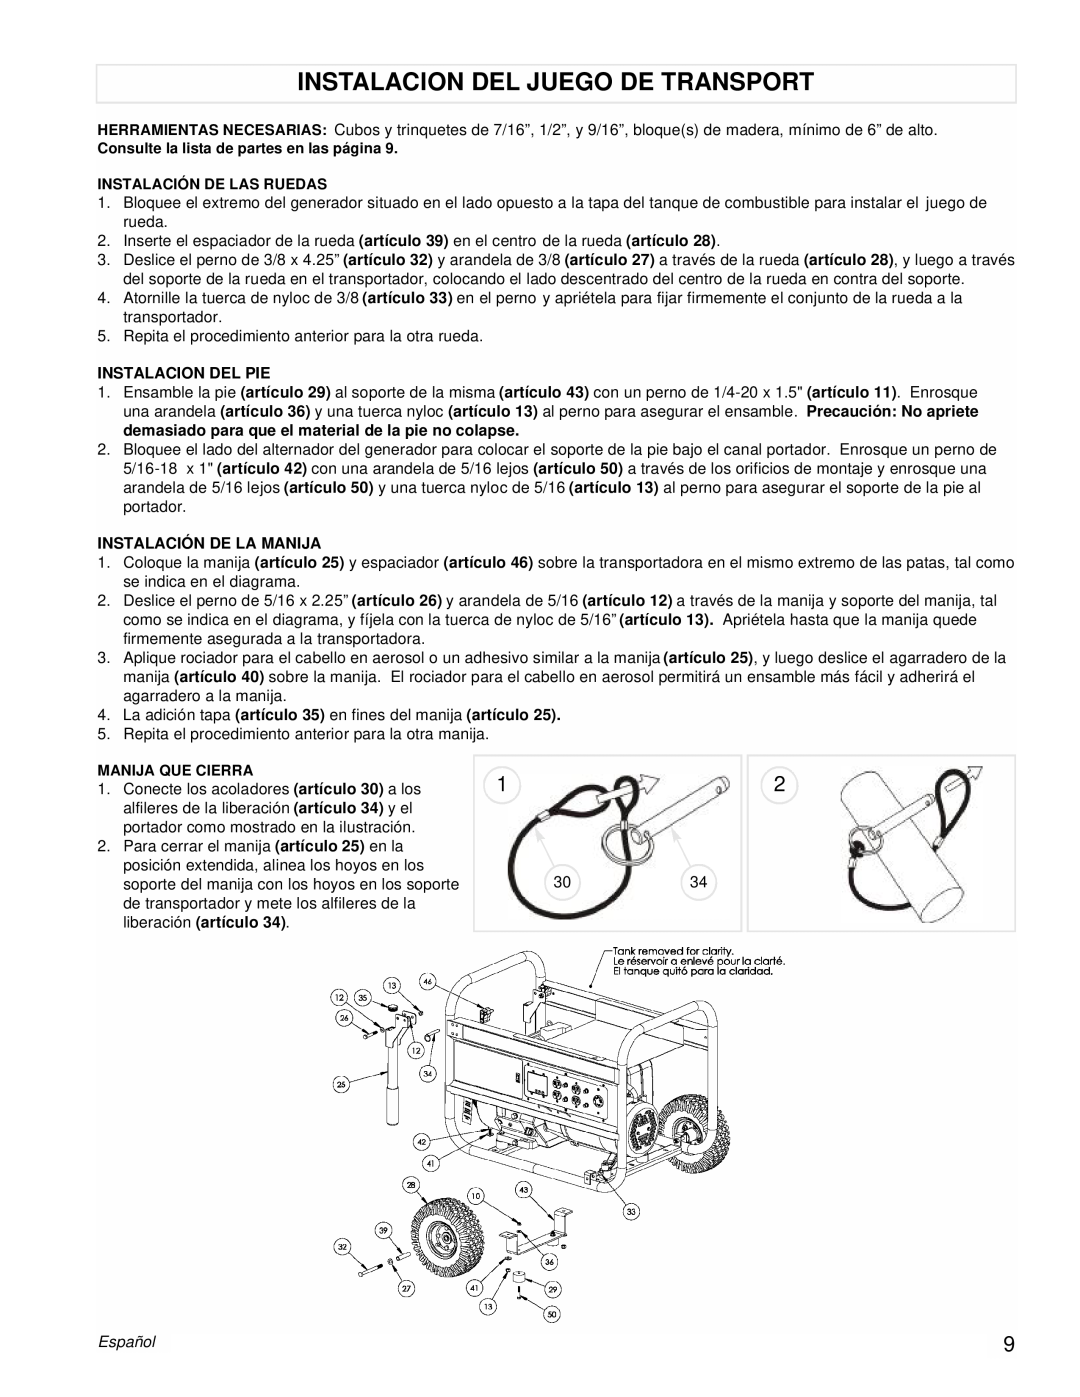 Powermate PM0497002 manual Instalacion Del Juego De Transport, Instalacion Del Pie, Instalación De La Manija, Español 